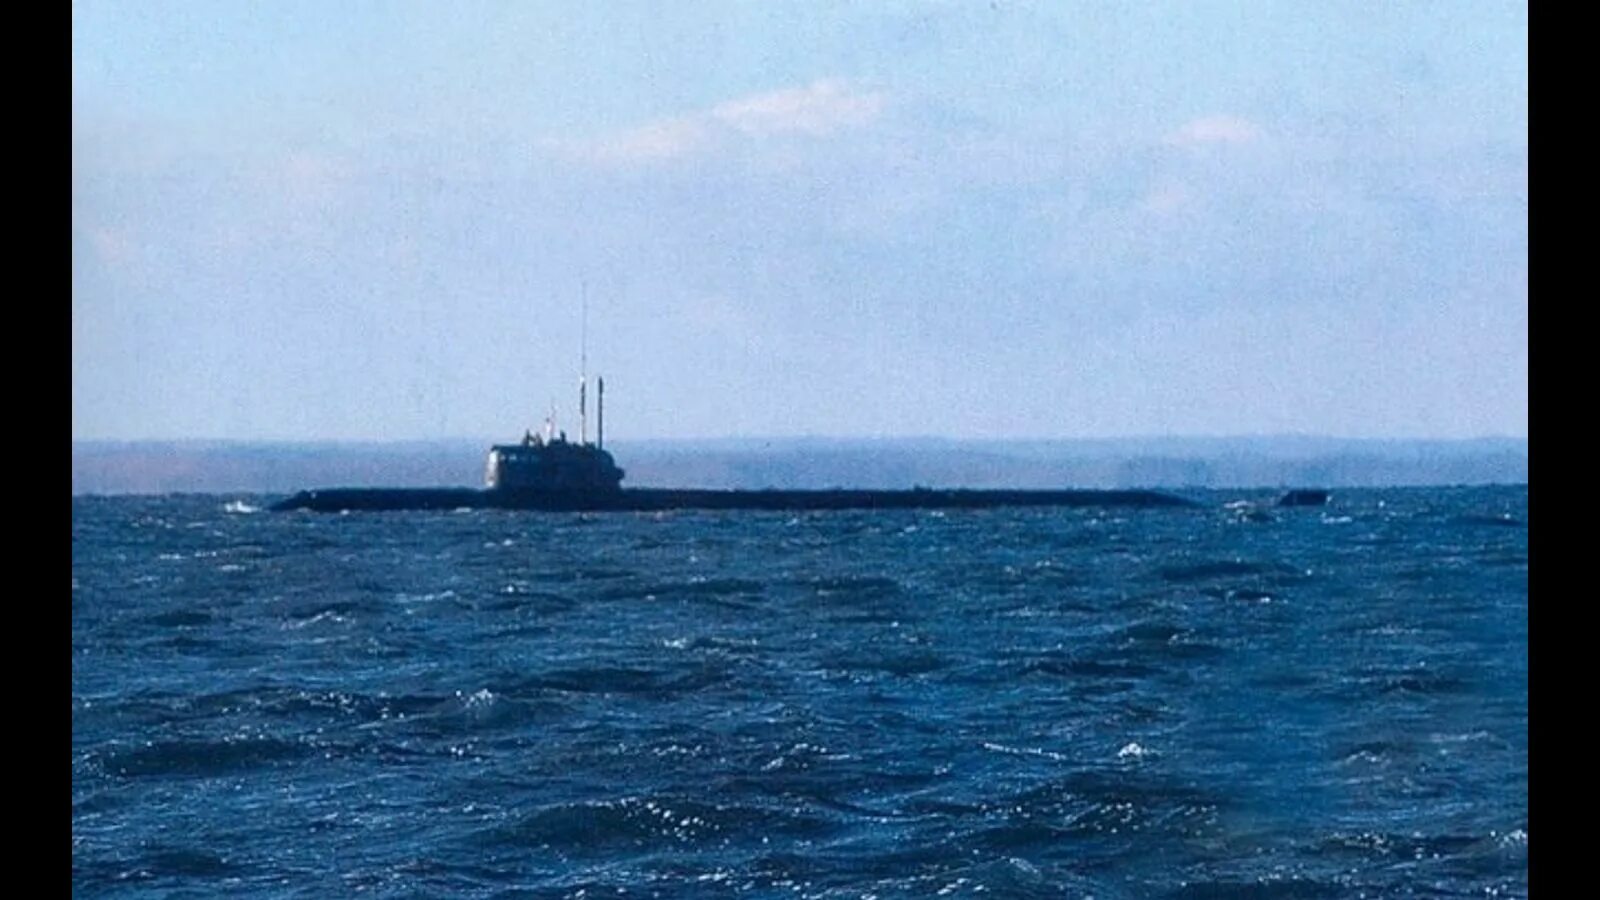 Атомная глубоководная станция АС-12 Лошарик. Атомная подводная лодка Лошарик. Подводная лодка АС 31 Лошарик. АС-31 Лошарик атомная глубоководная станция проекта 10831. Показать пл